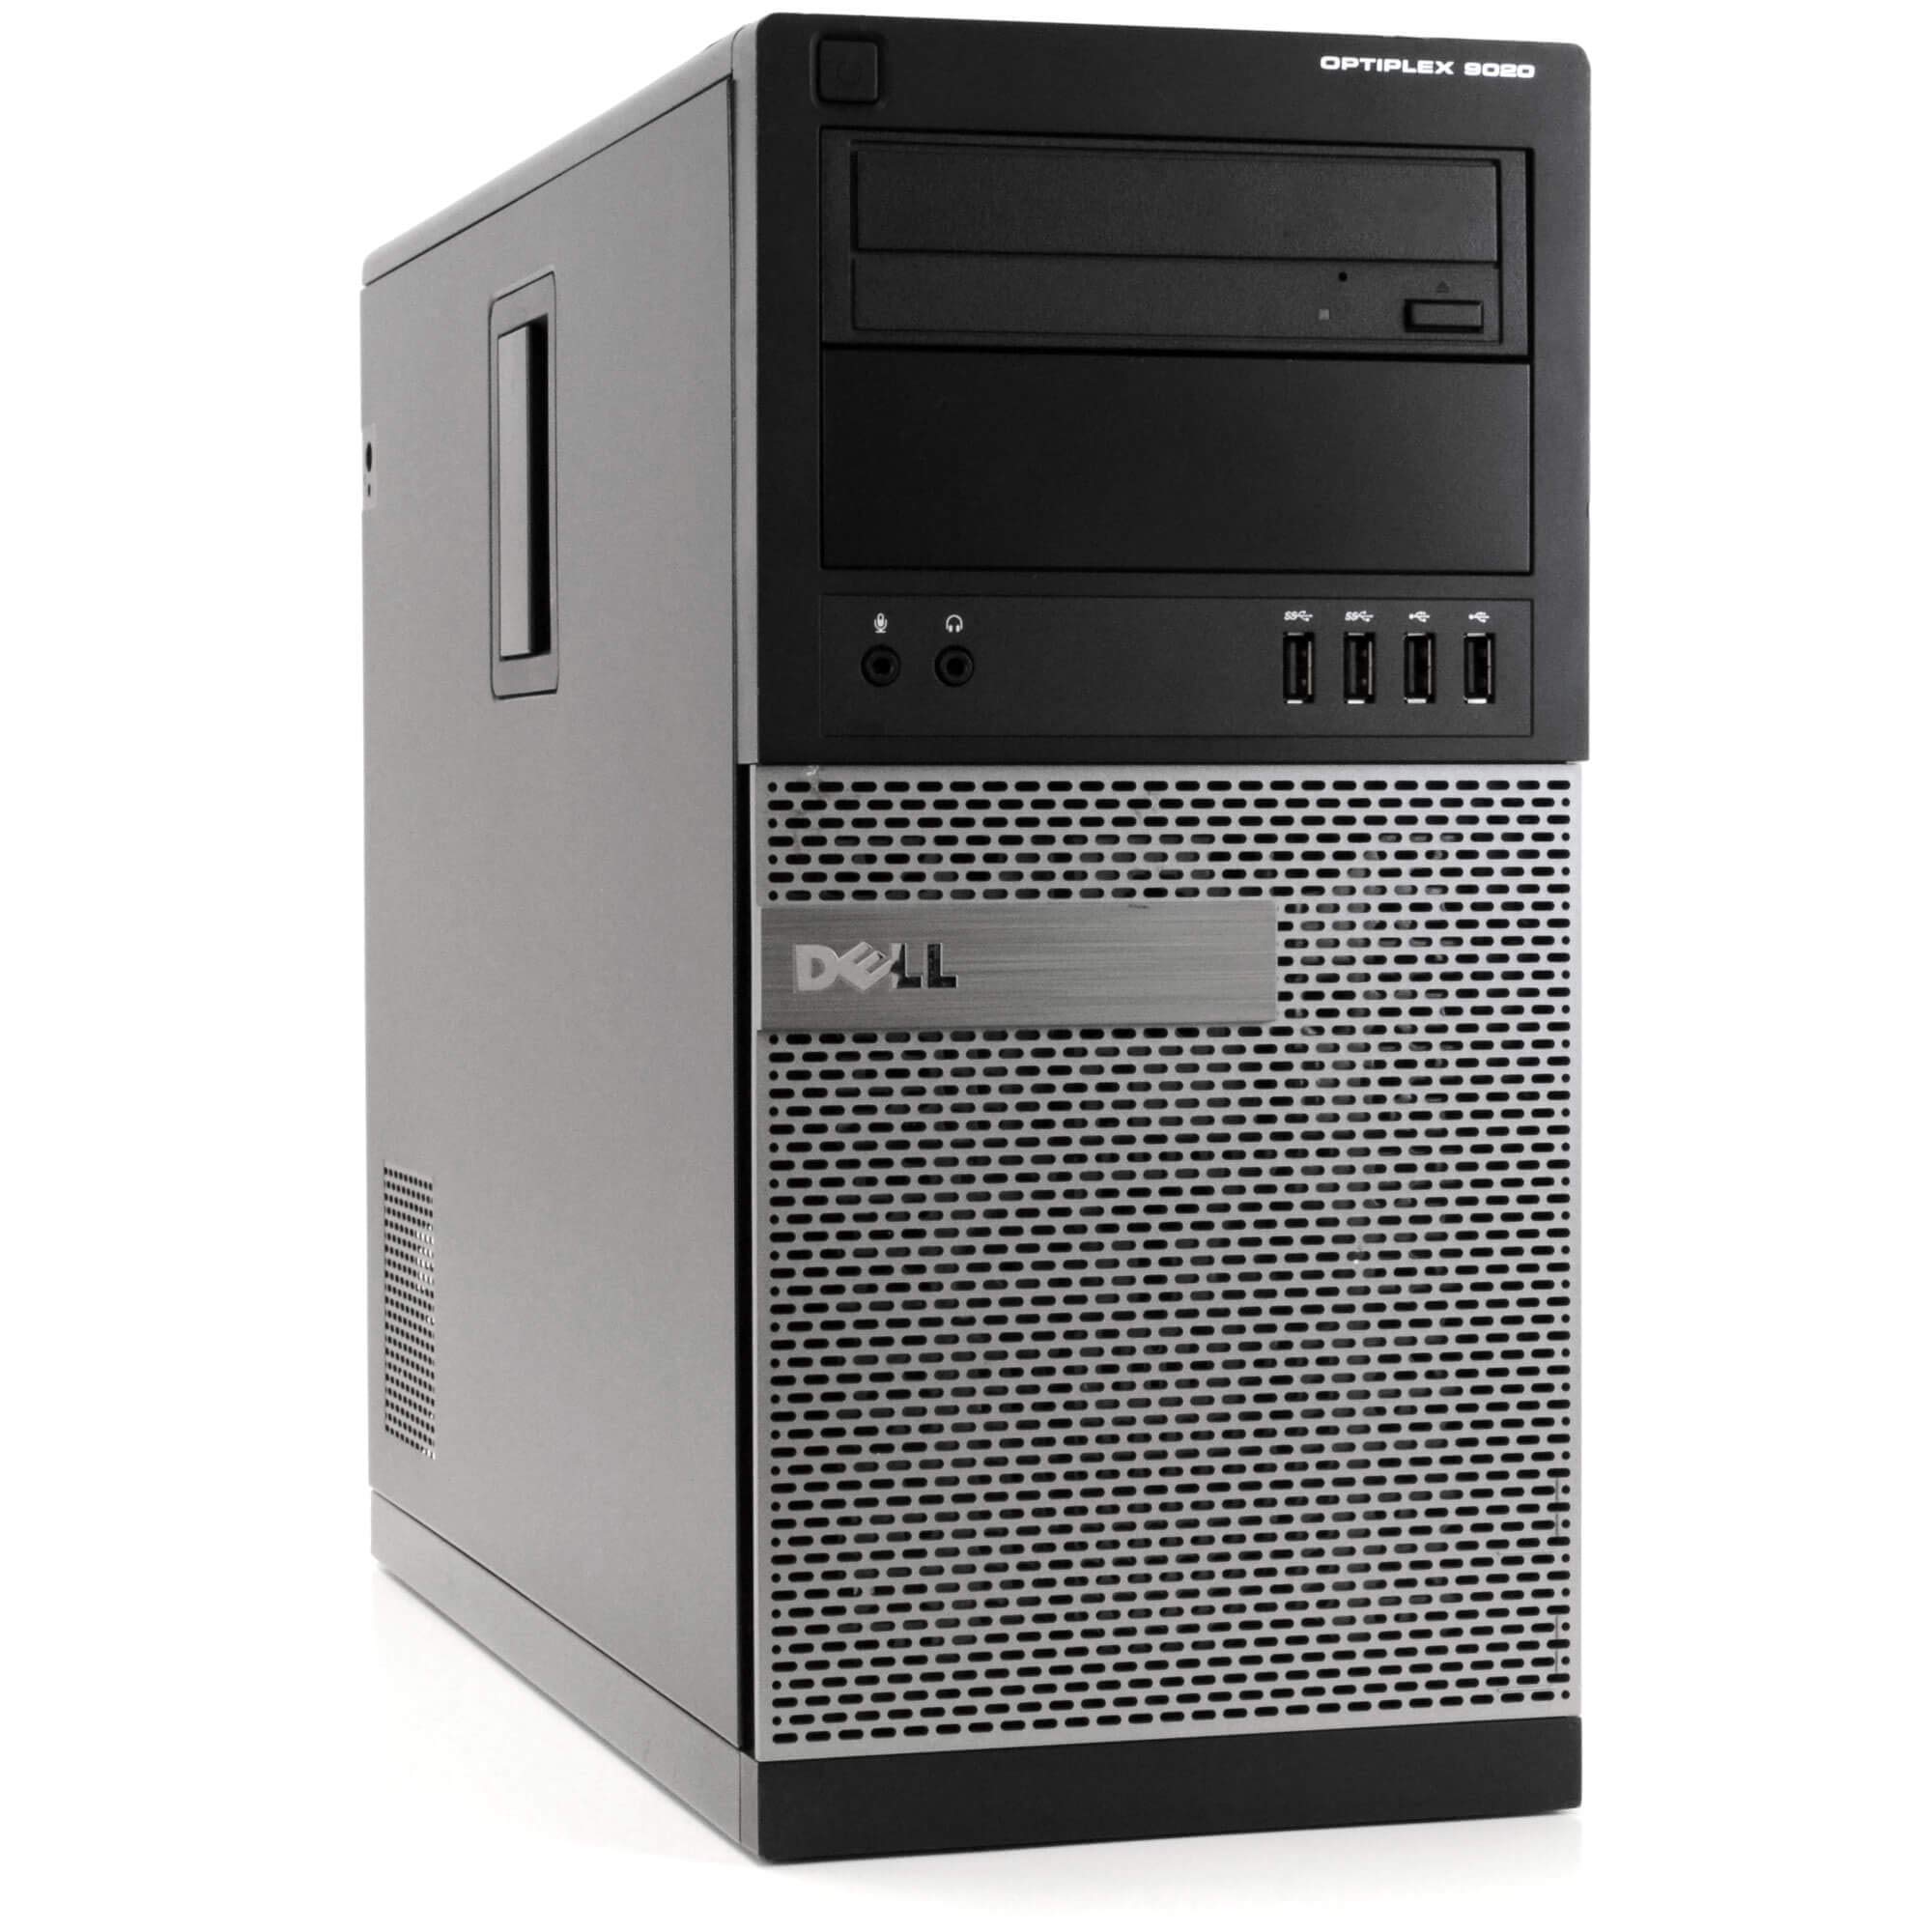 Dell Optiplex 9020 Mini Tower Desktop PC, Intel Core i5-4570-3.2 GHz, 32GB Ram, 1TB(1000GB) SSD Drive, WiFi, DVD-RW, Windows 10 Pro (Renewed)